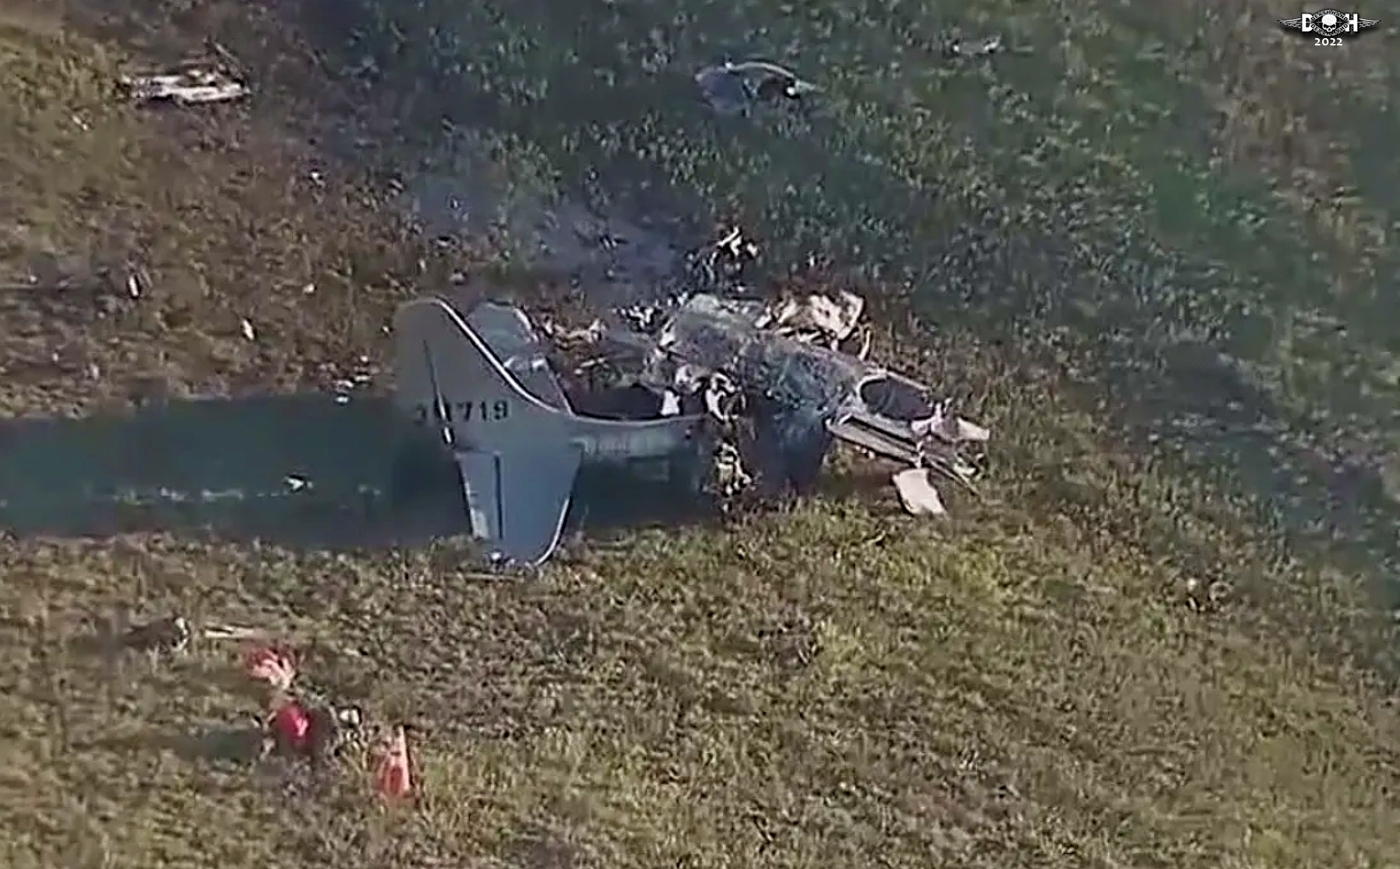 Dallas Air show crash 7 - Nov 14 2022 - DH.jpg